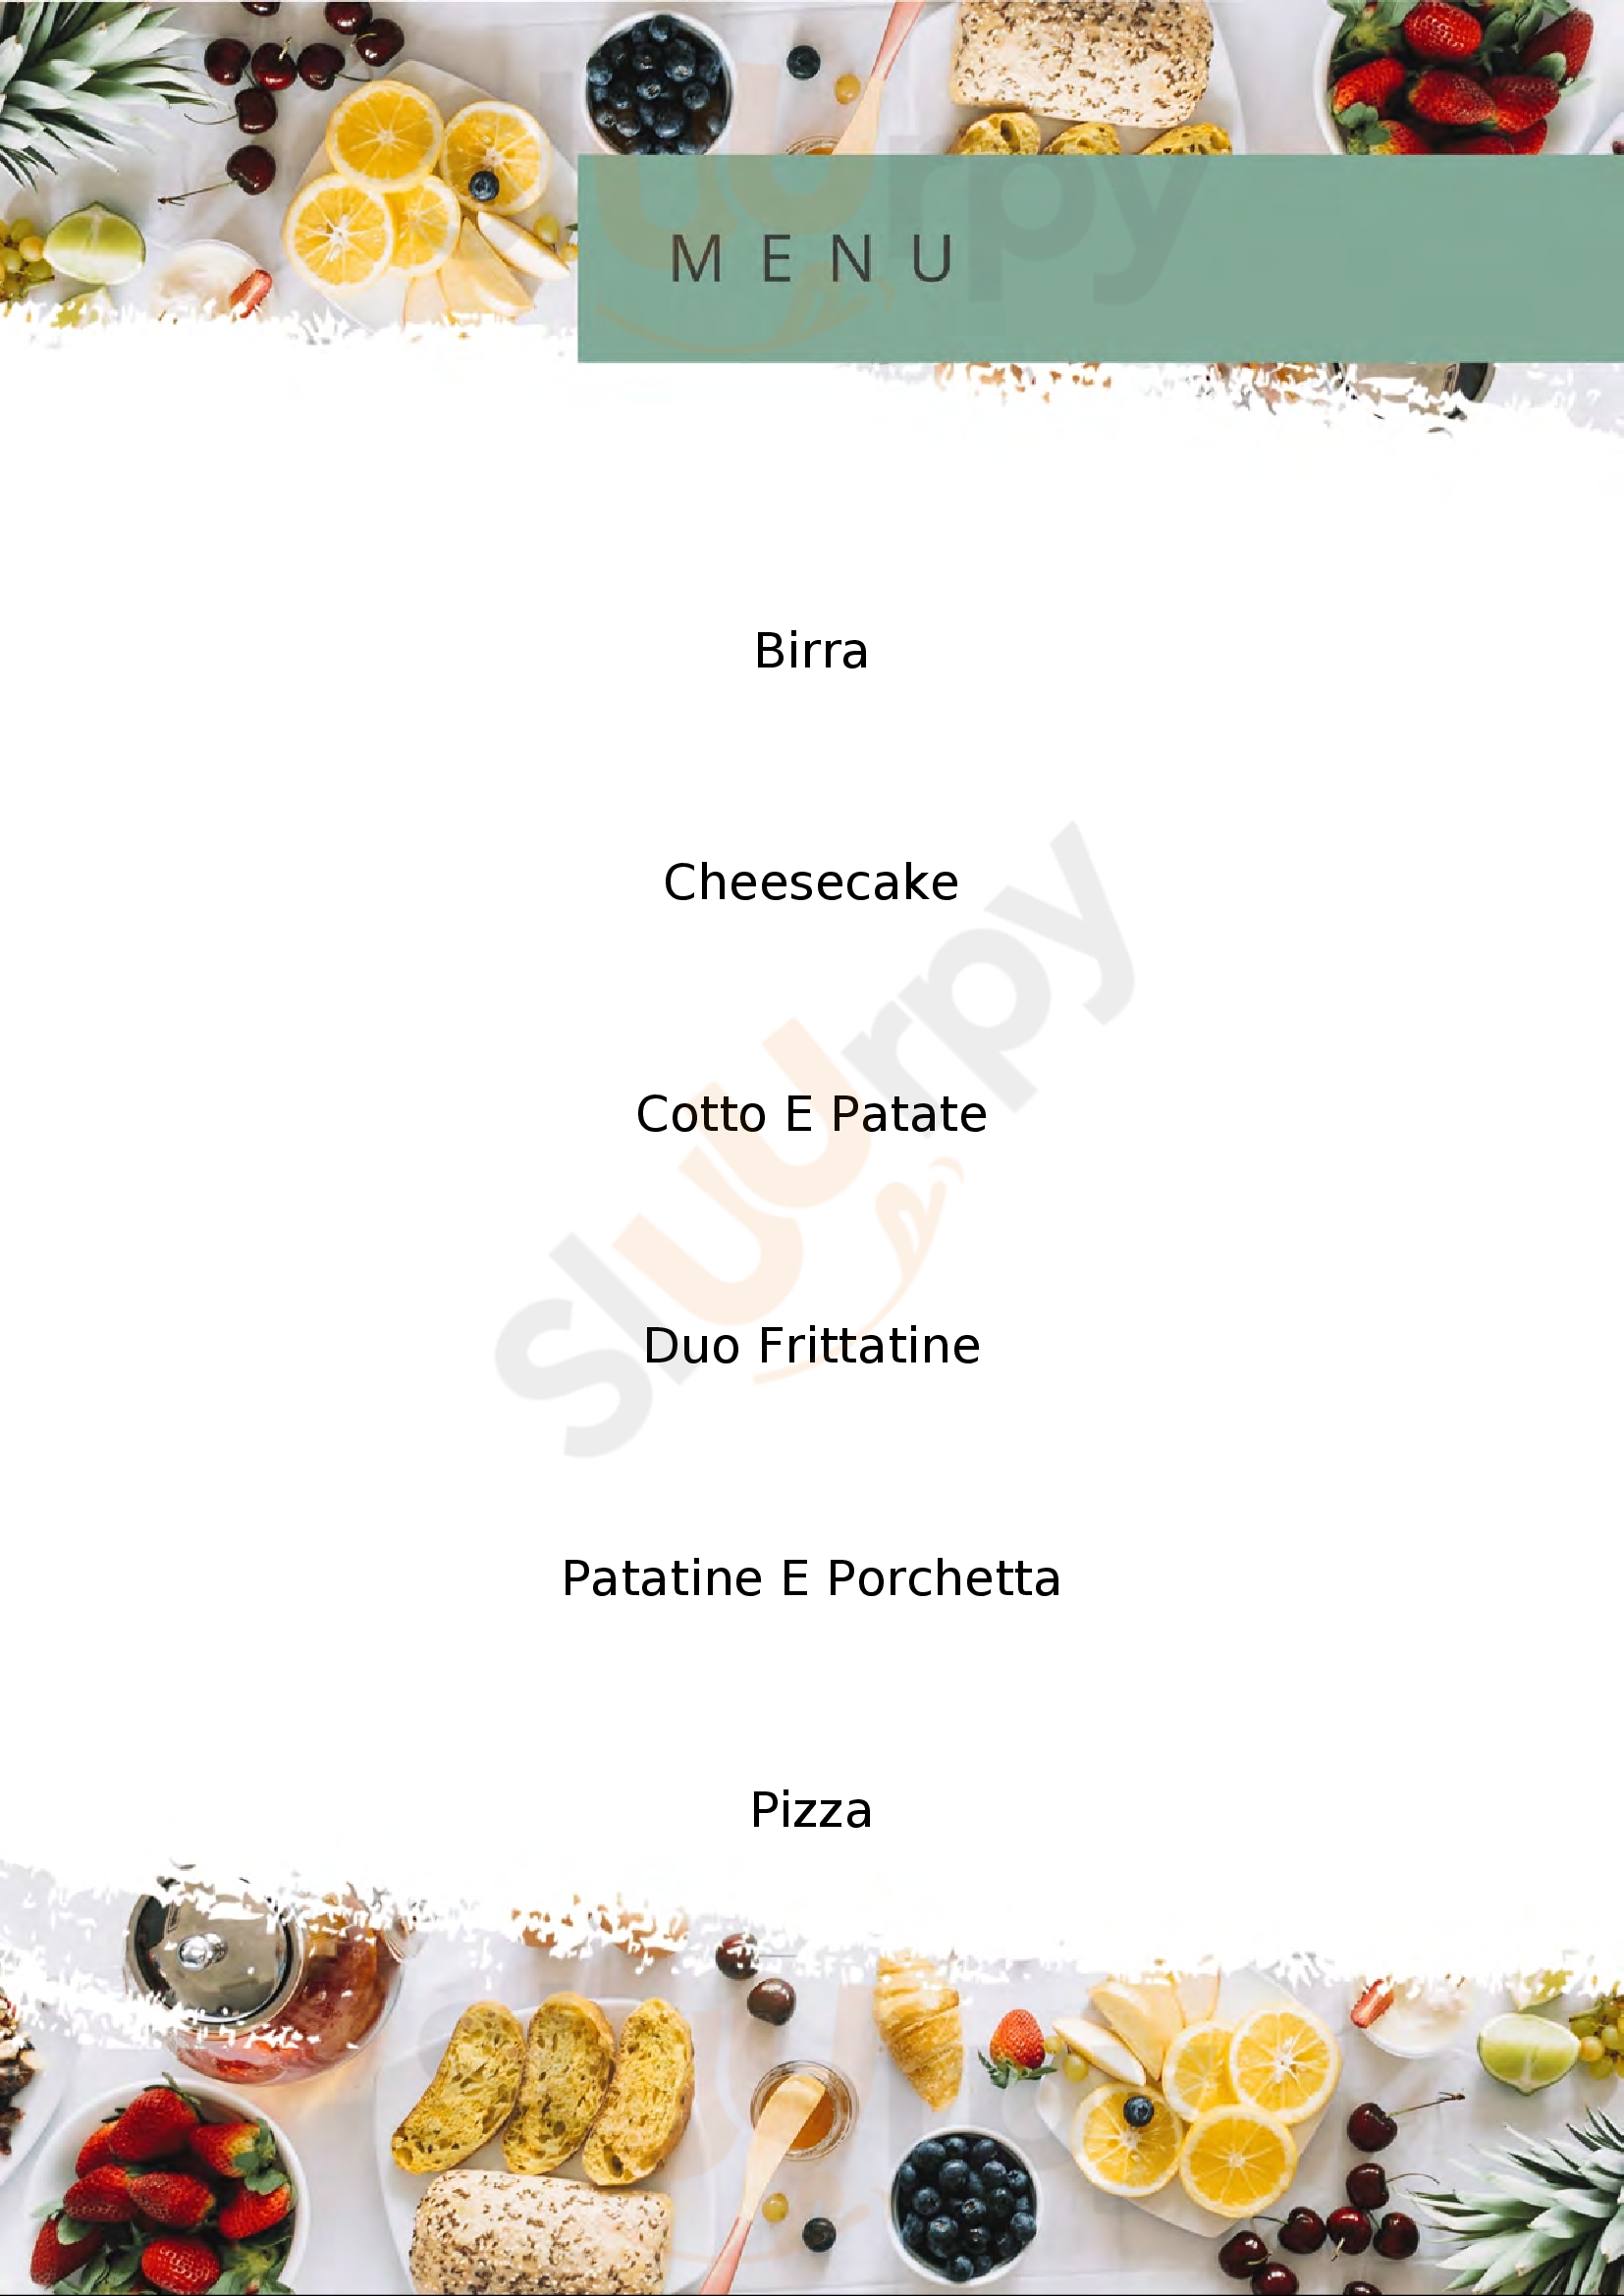 Pizzeria 0881 - I Ricercatori Del Gusto Foggia menù 1 pagina